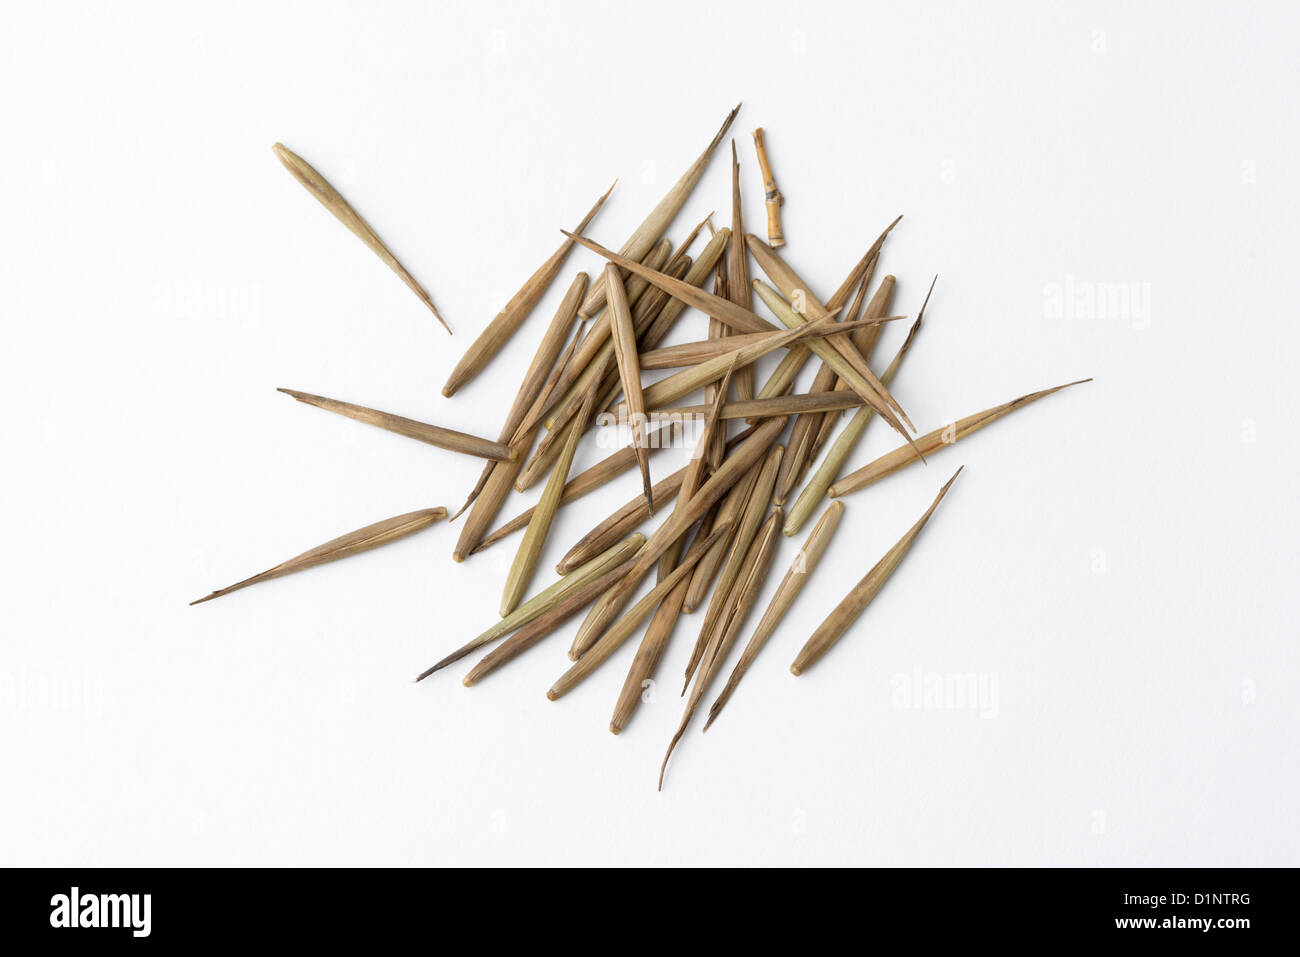 Moso bamboo immagini e fotografie stock ad alta risoluzione - Alamy